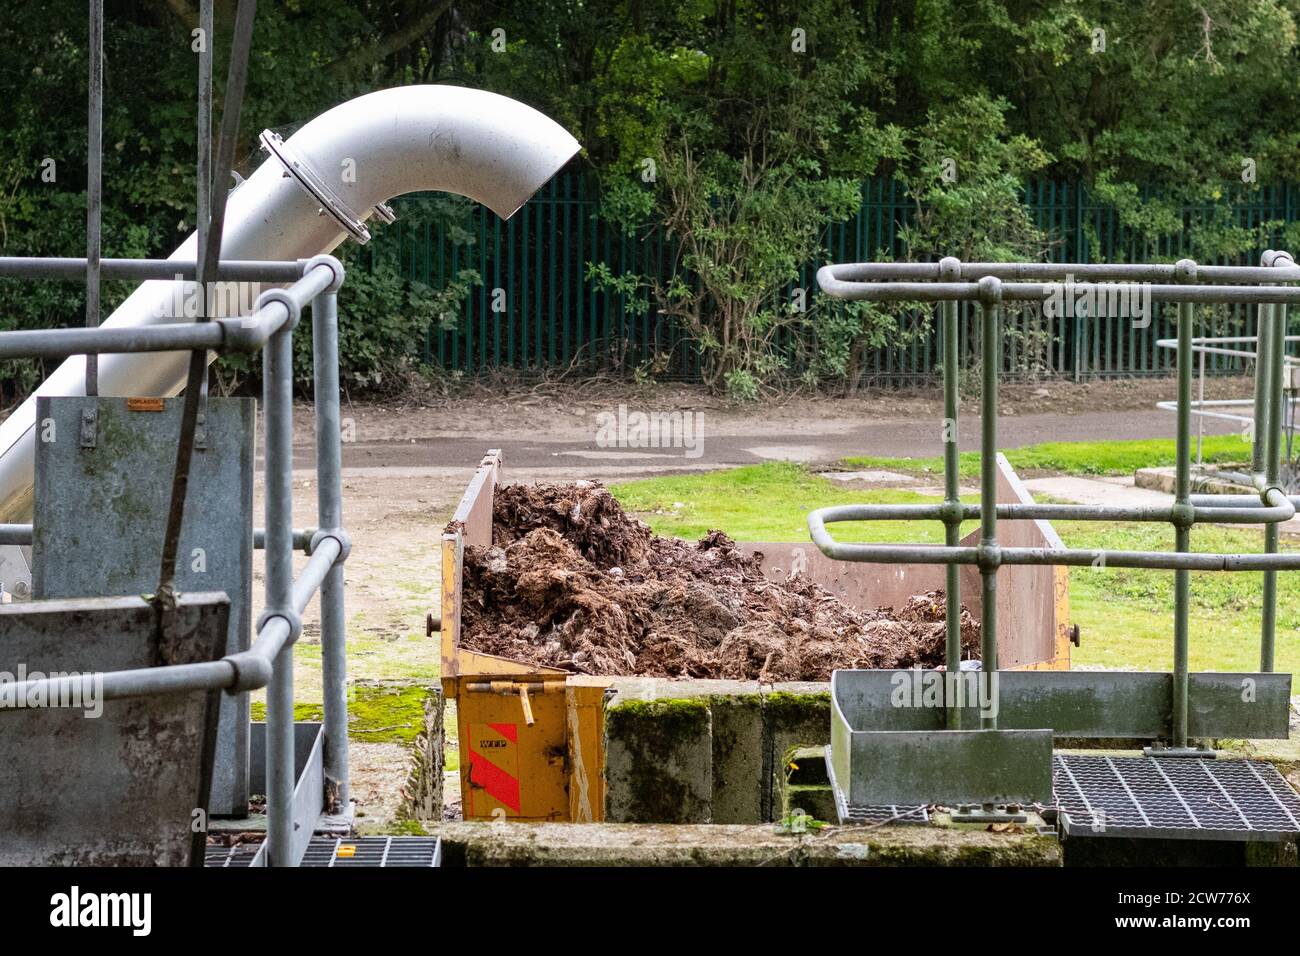 Kläranlagen Wasseraufbereitungsarbeiten - grobes Material wie feuchte Tücher während der Vorbehandlung entfernt - Richmond, Yorkshire, England, Großbritannien Stockfoto